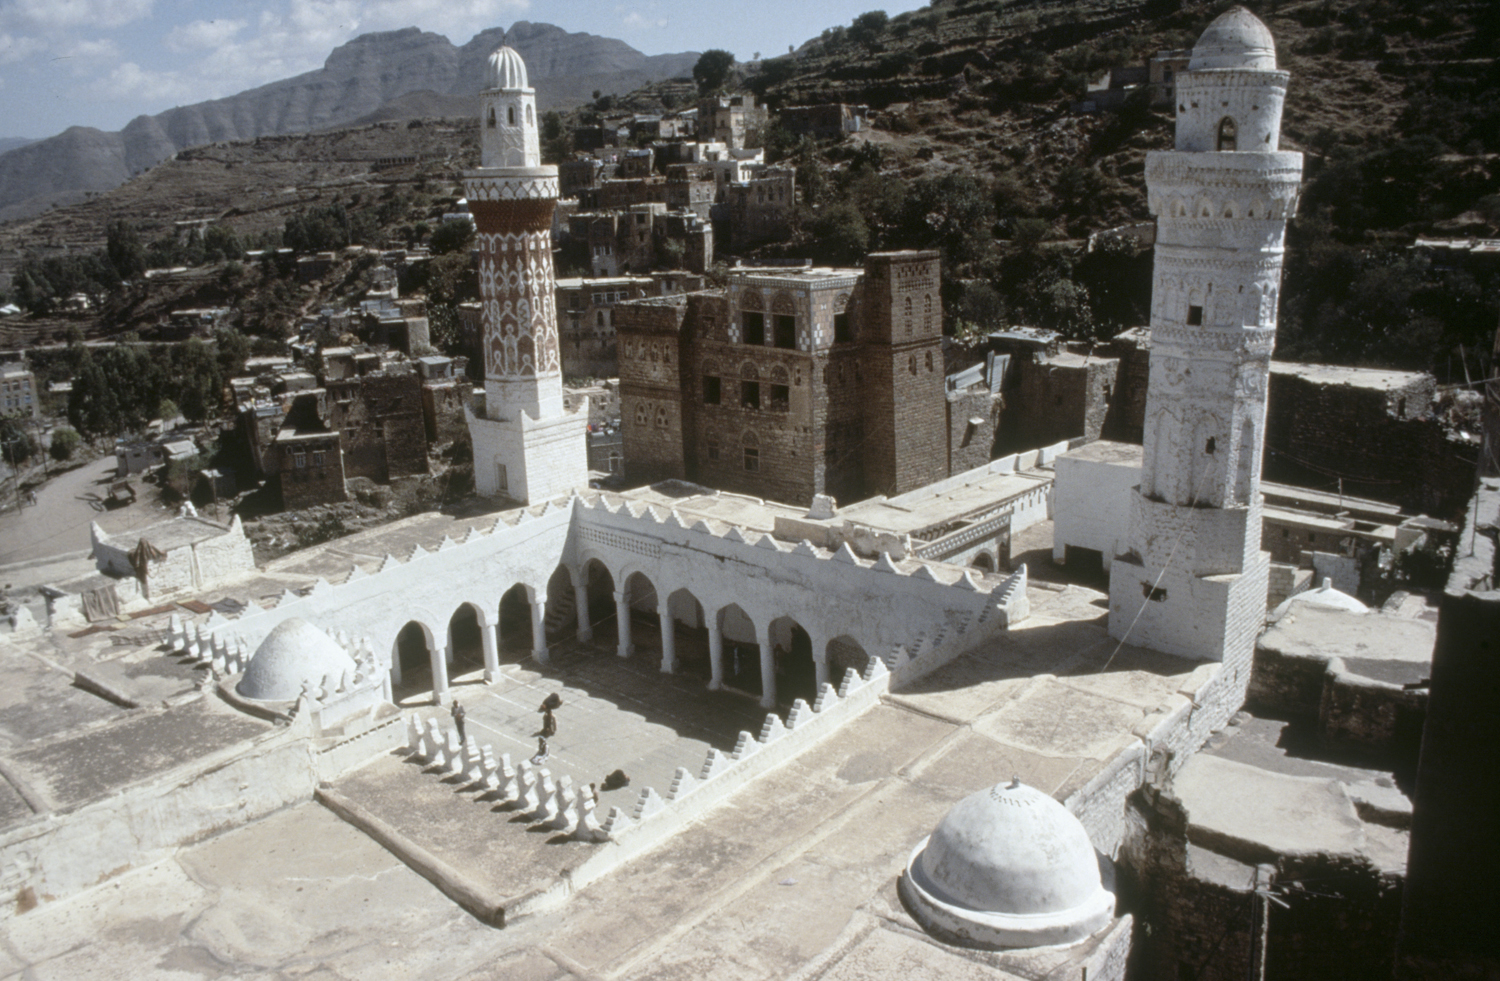 Jami' al-Kabir Complex